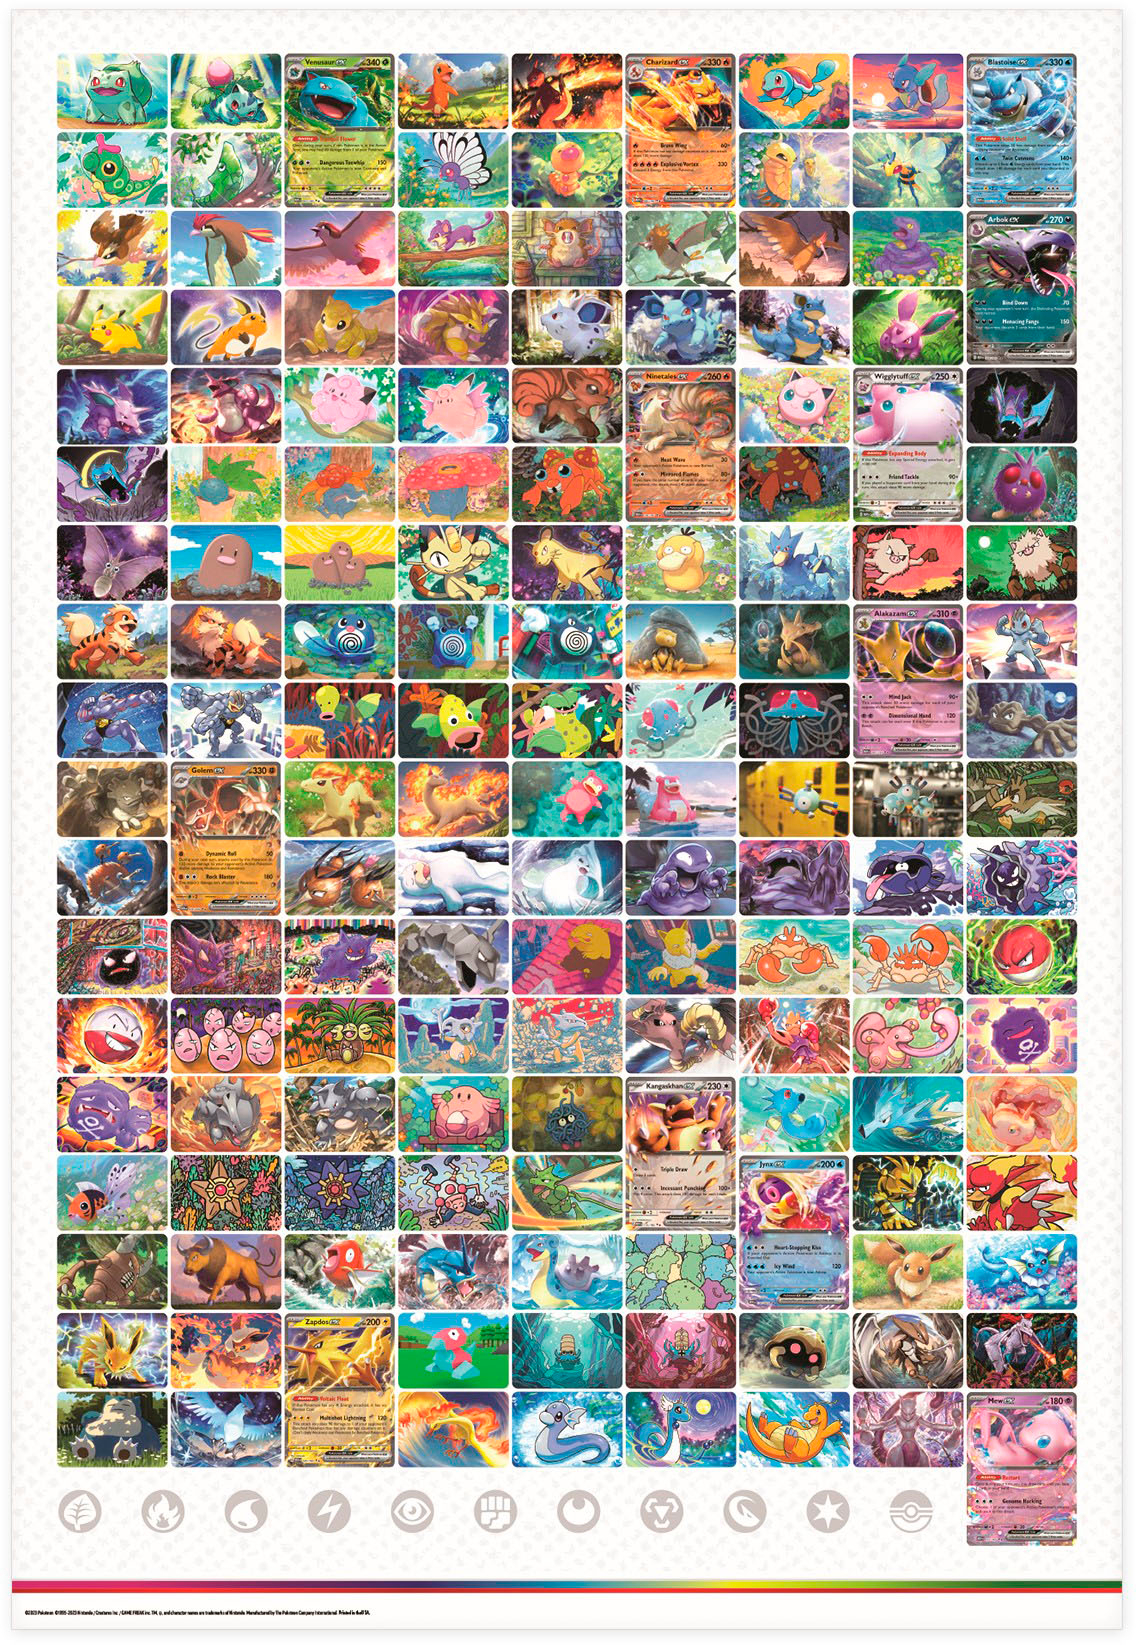 Pokémon Card 151 - Pokemon - Epic Game